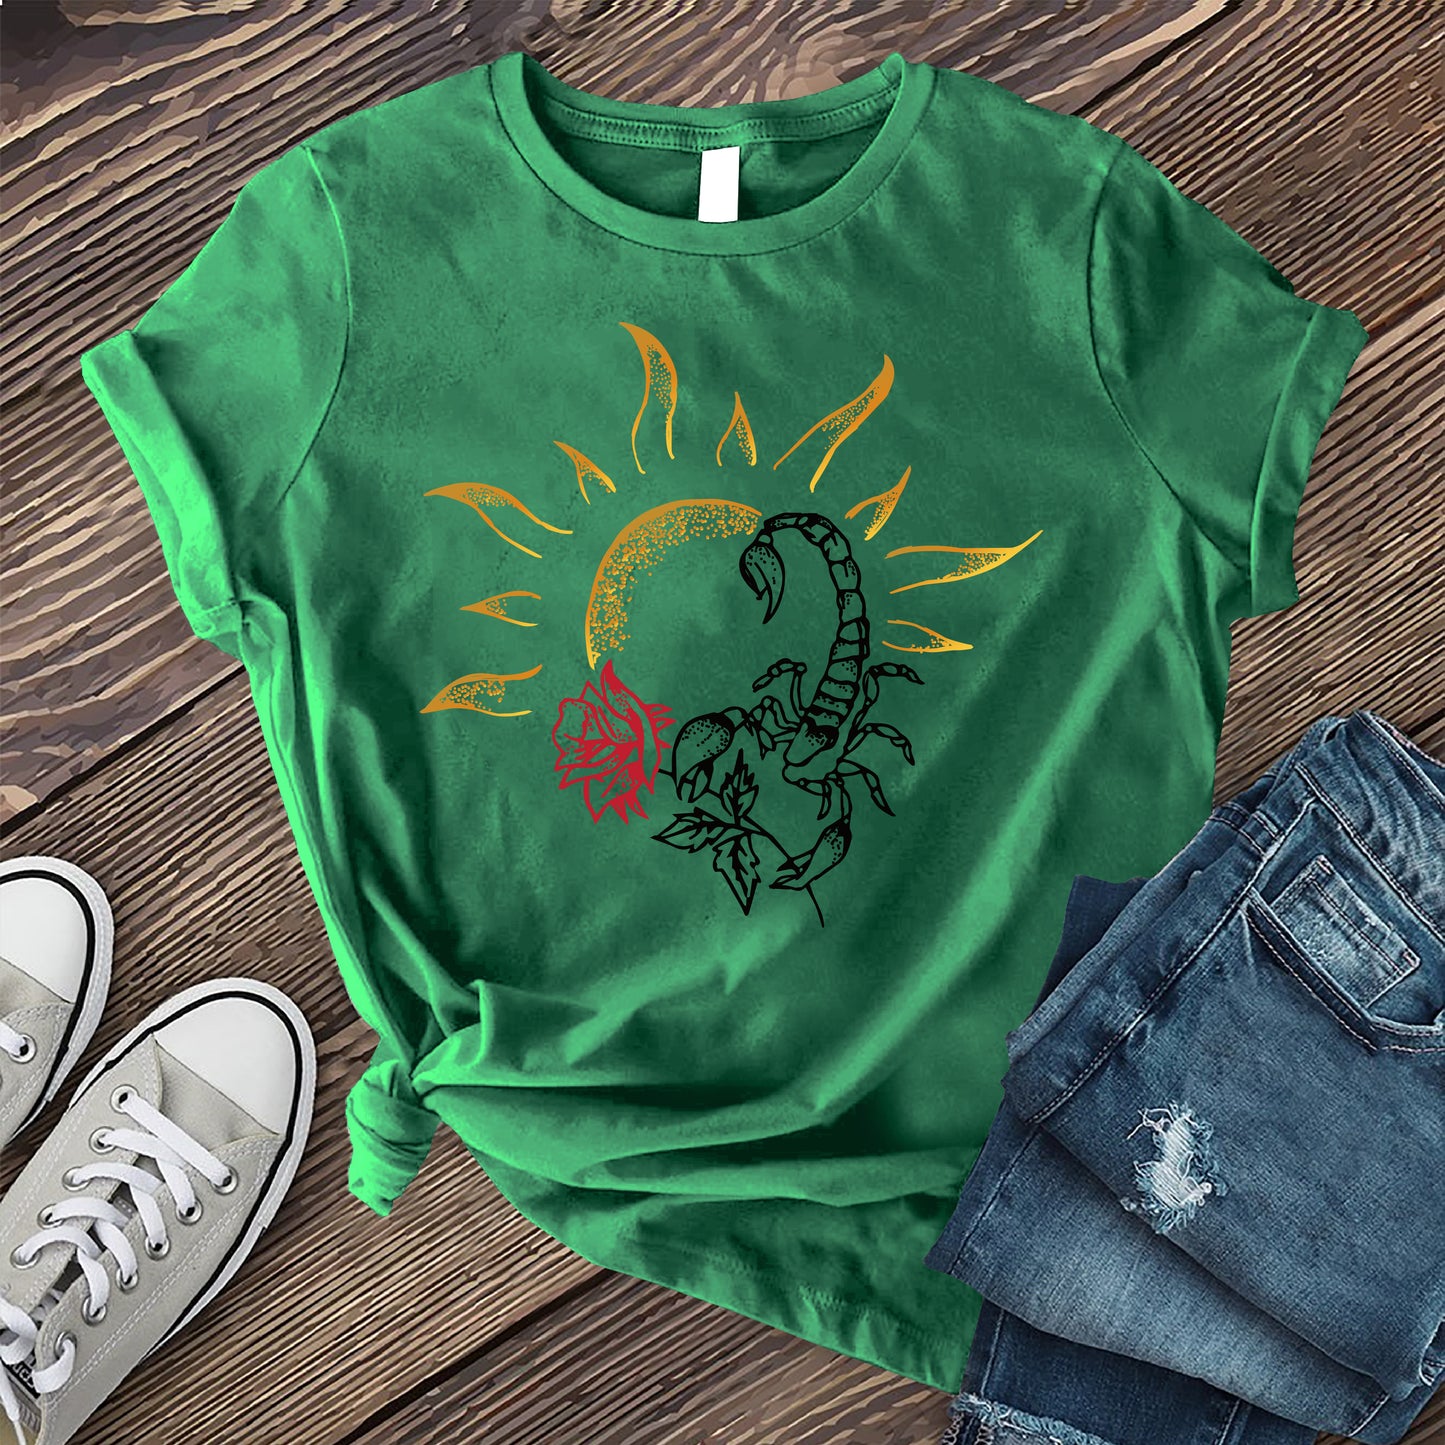 Scorpio Sun and Rose T-shirt